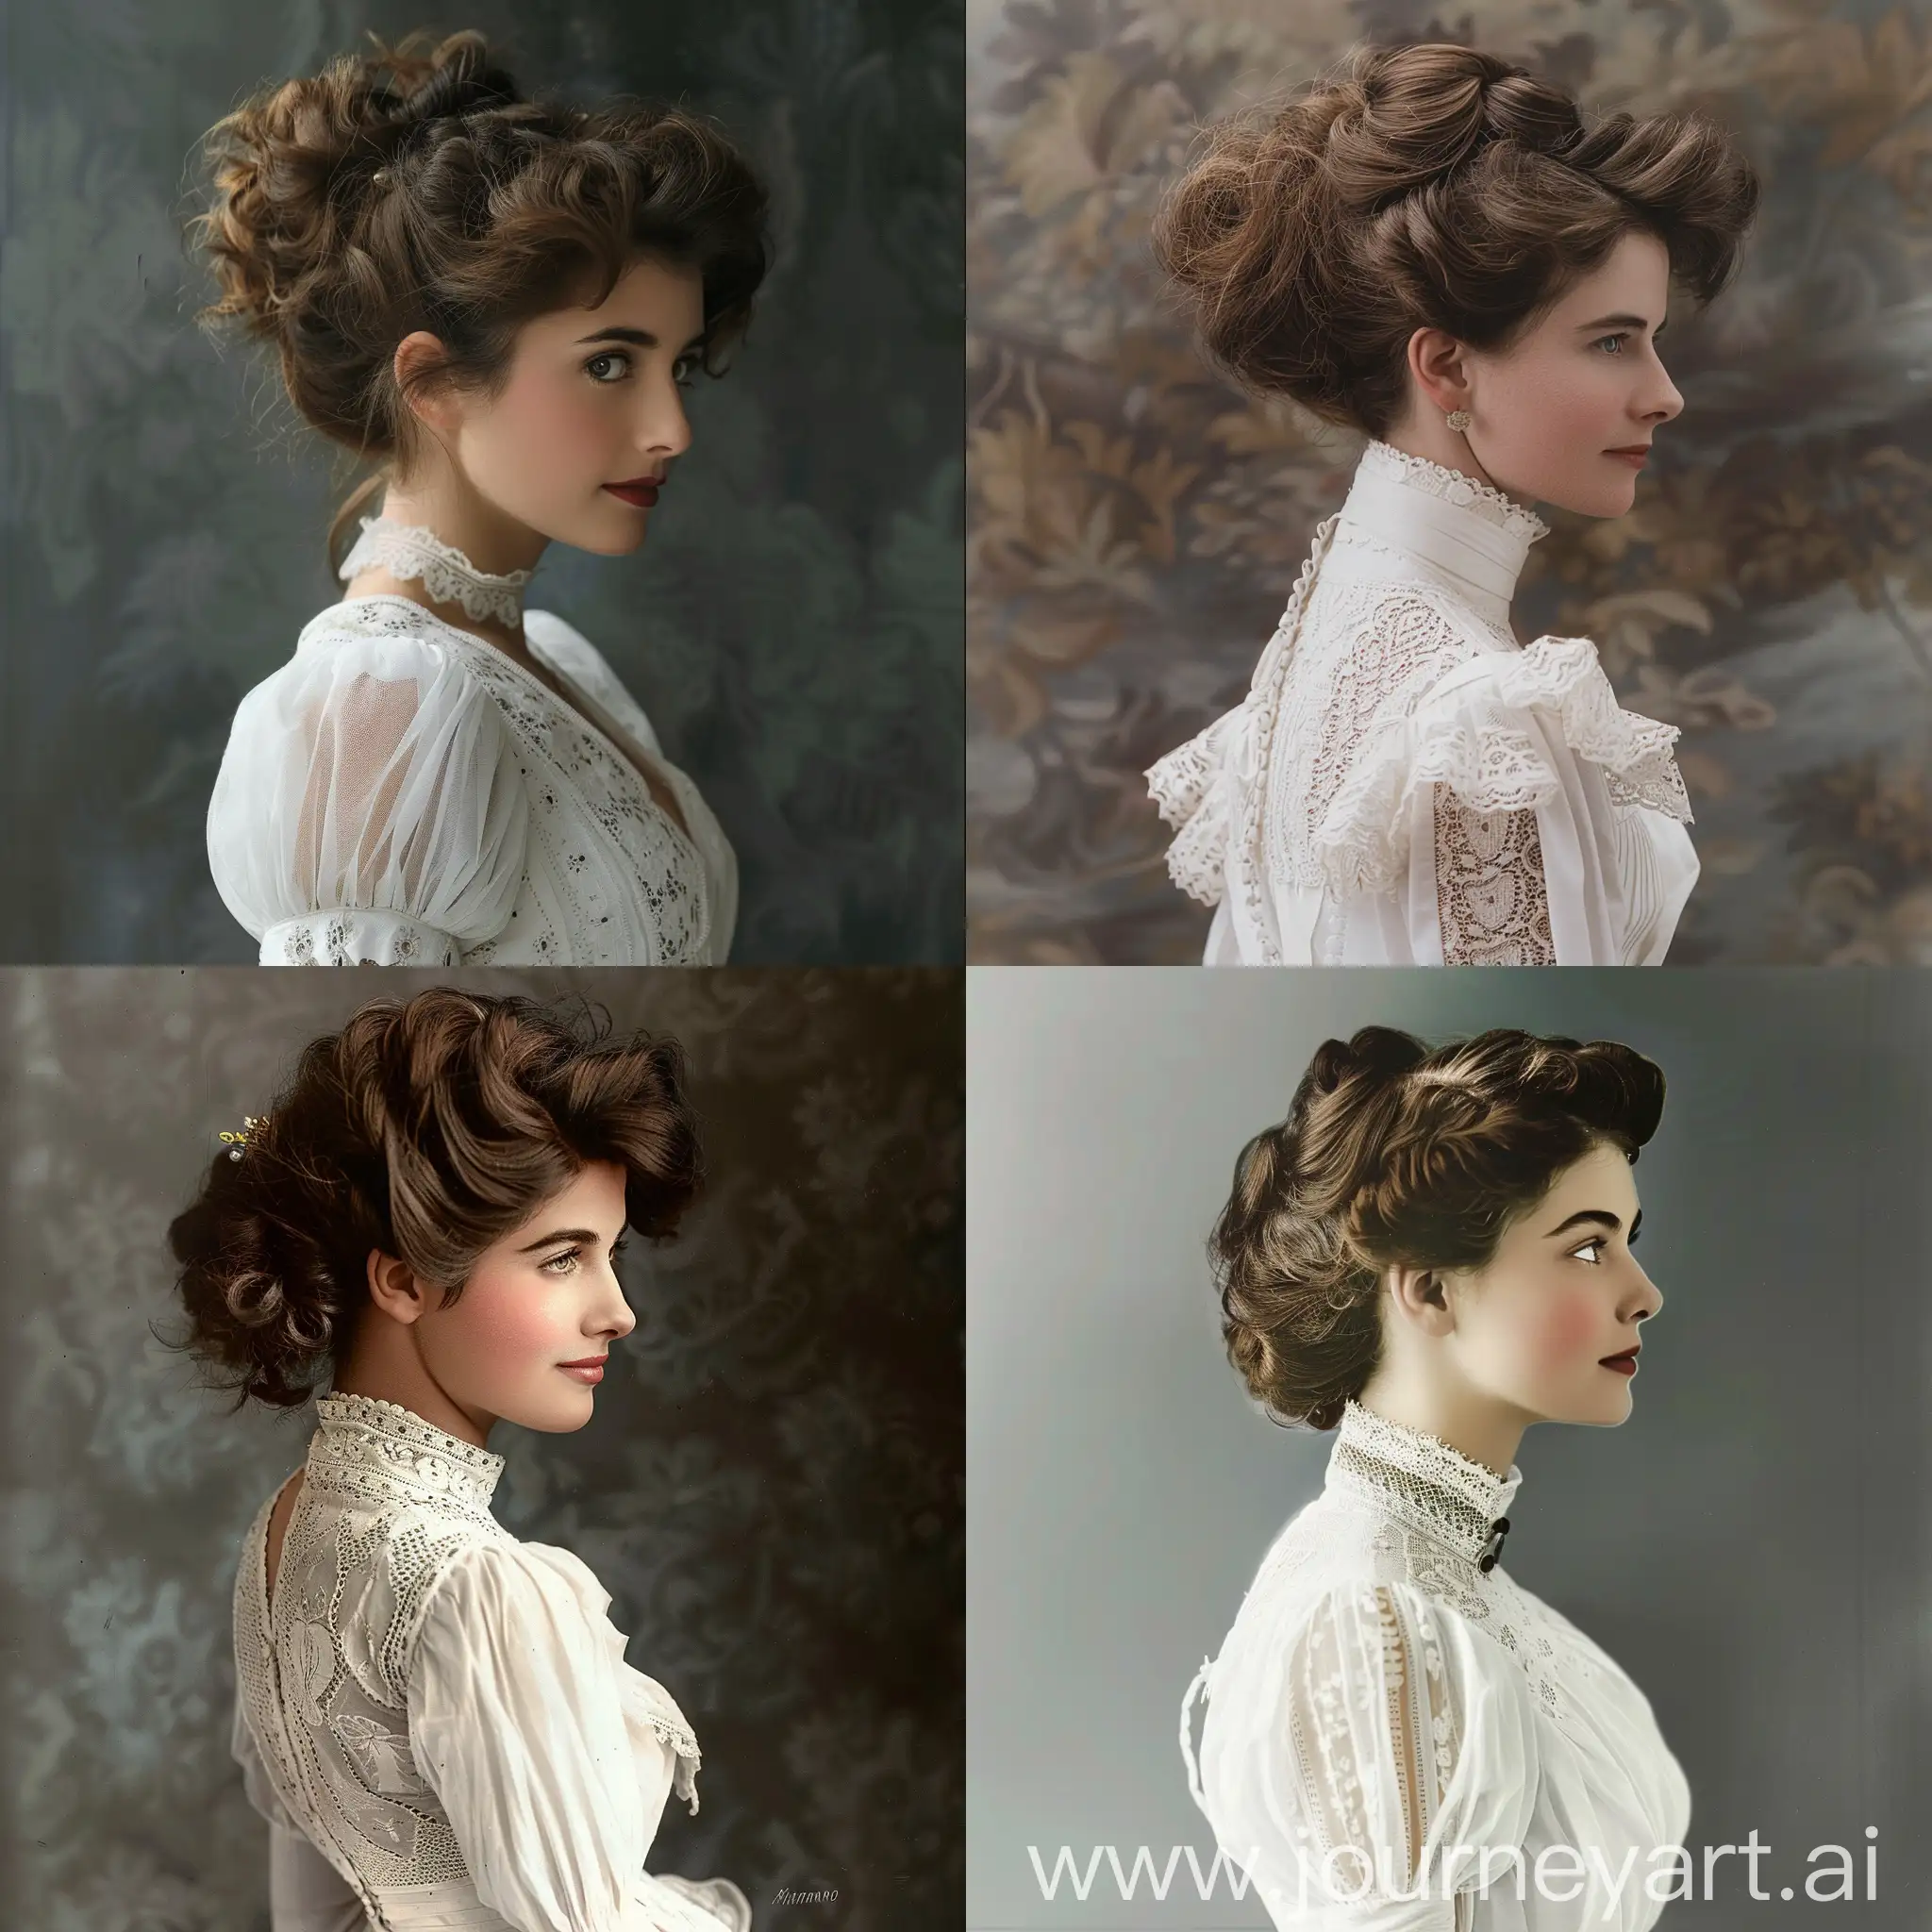 Mujer hermosa de los años de 1910s con un vestido blanco y con un peinado distintivo para la época y de apellido mendrano